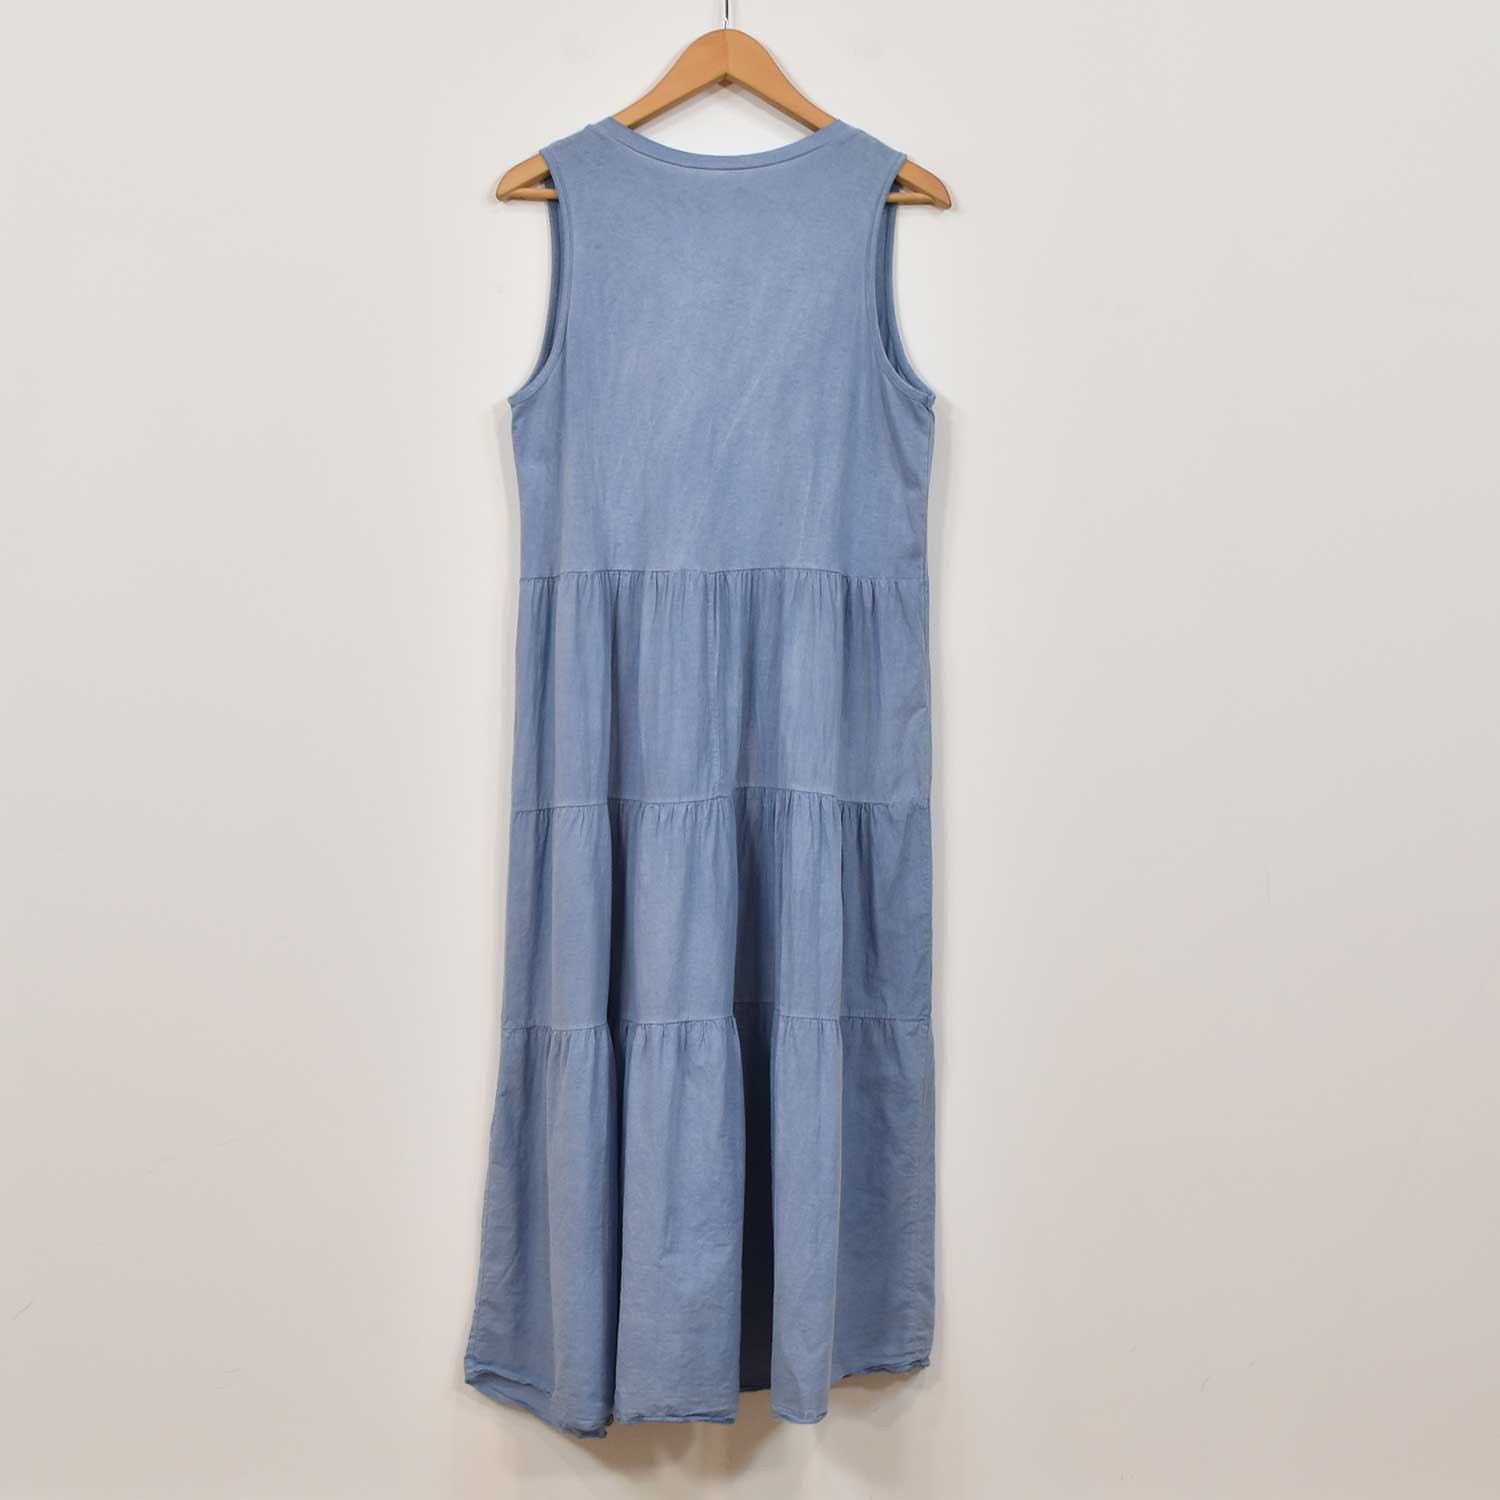 Blue stitching dress
